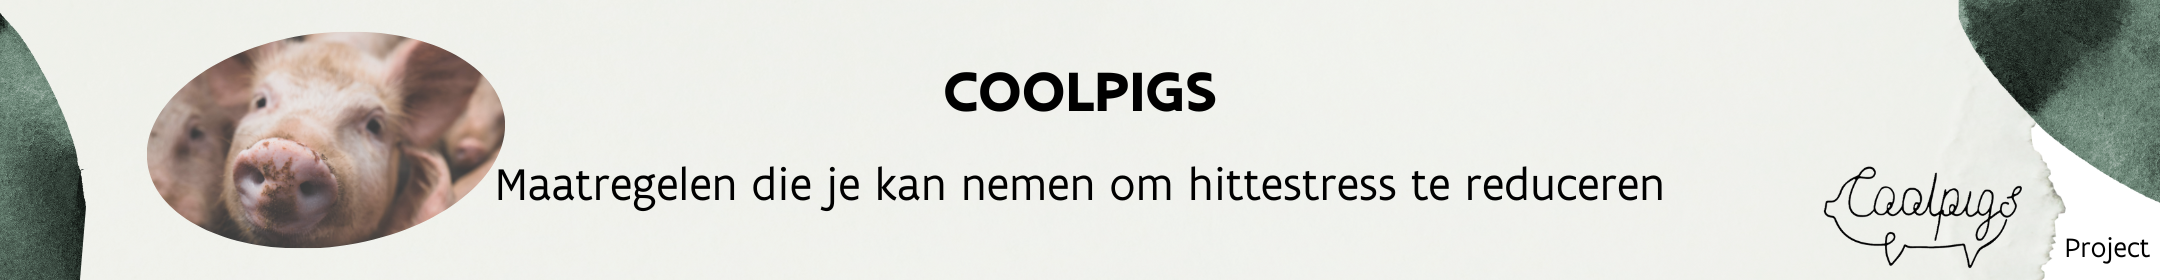 Header_coolpigs